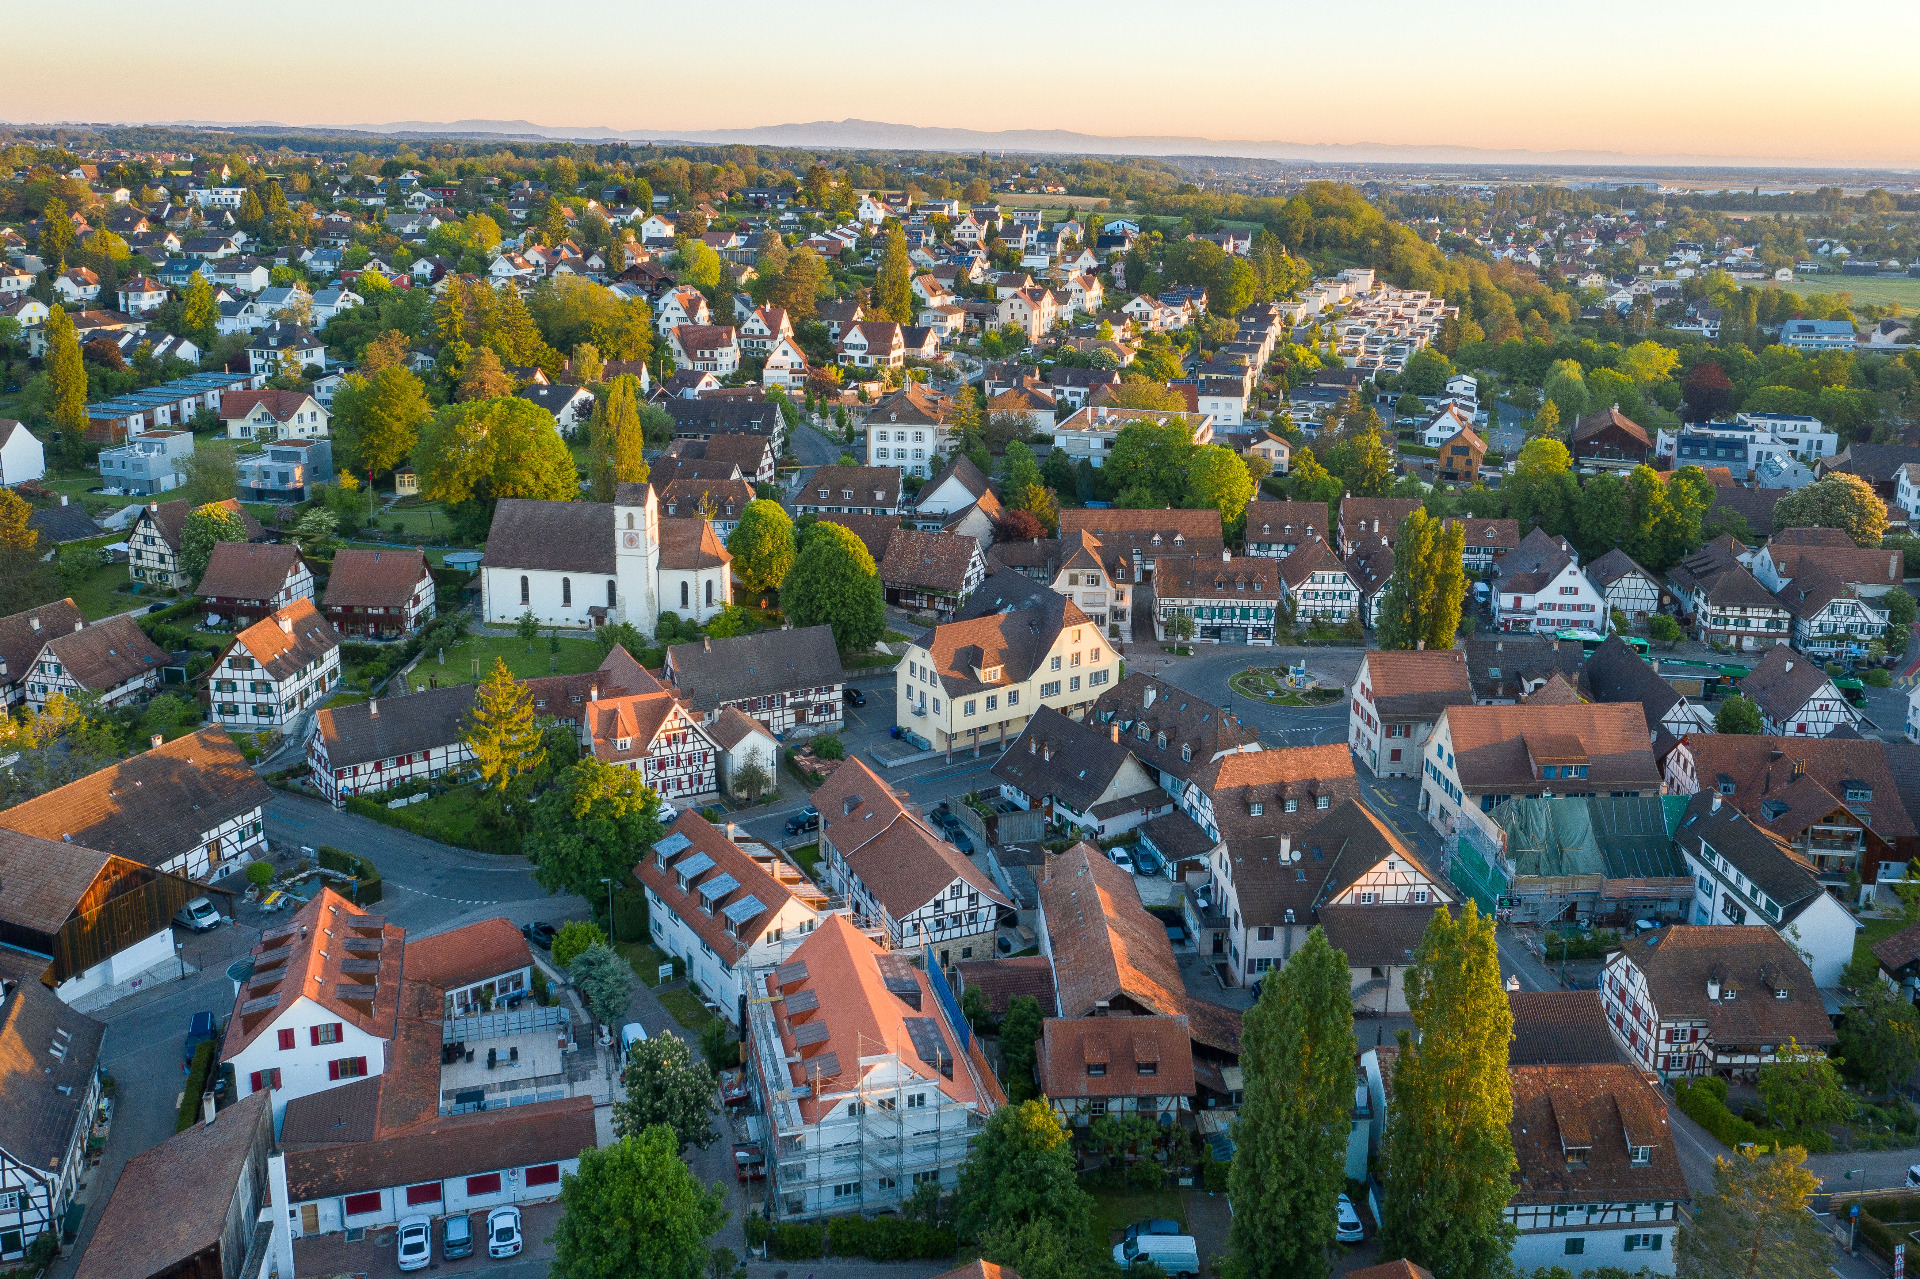 Luftaufnahme von der Gemeinde Allschwil mit dem alten Dorfkern im Vordergrund. 